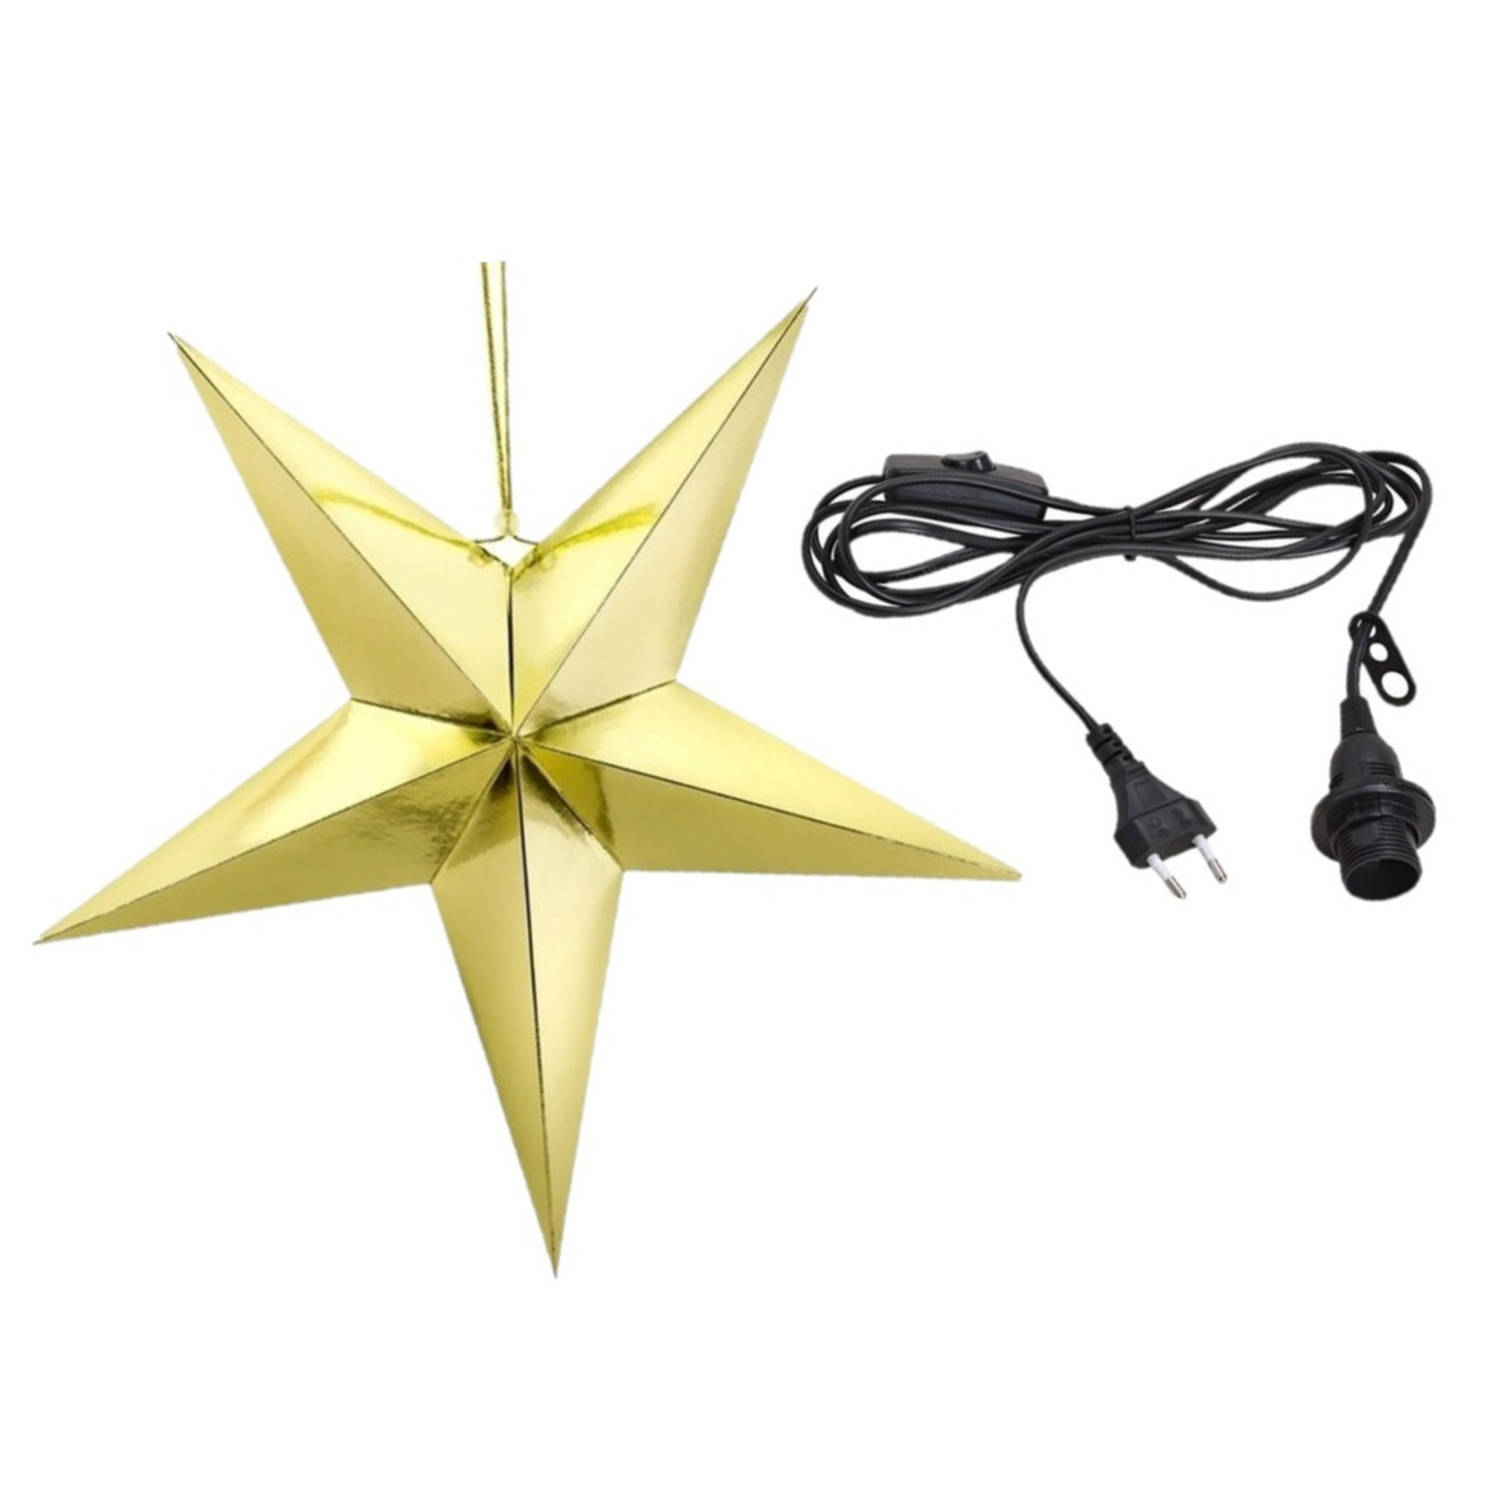 Kerstster decoratie gouden ster lampion 70 cm inclusief zwarte lichtkabel Kerststerren